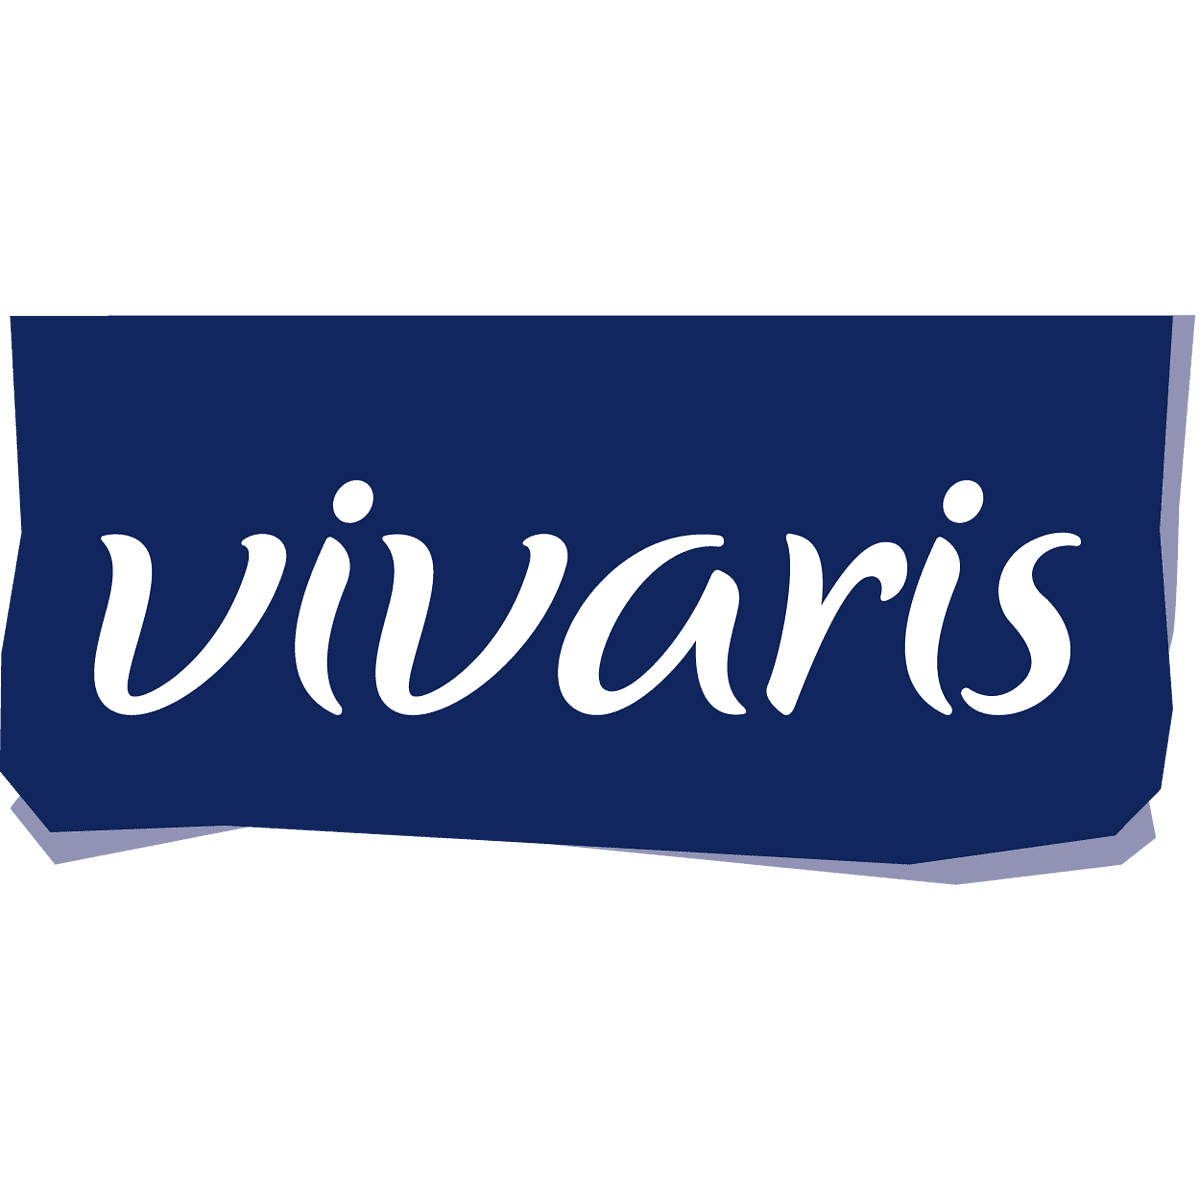 Vivaris - Hormes starker Partner